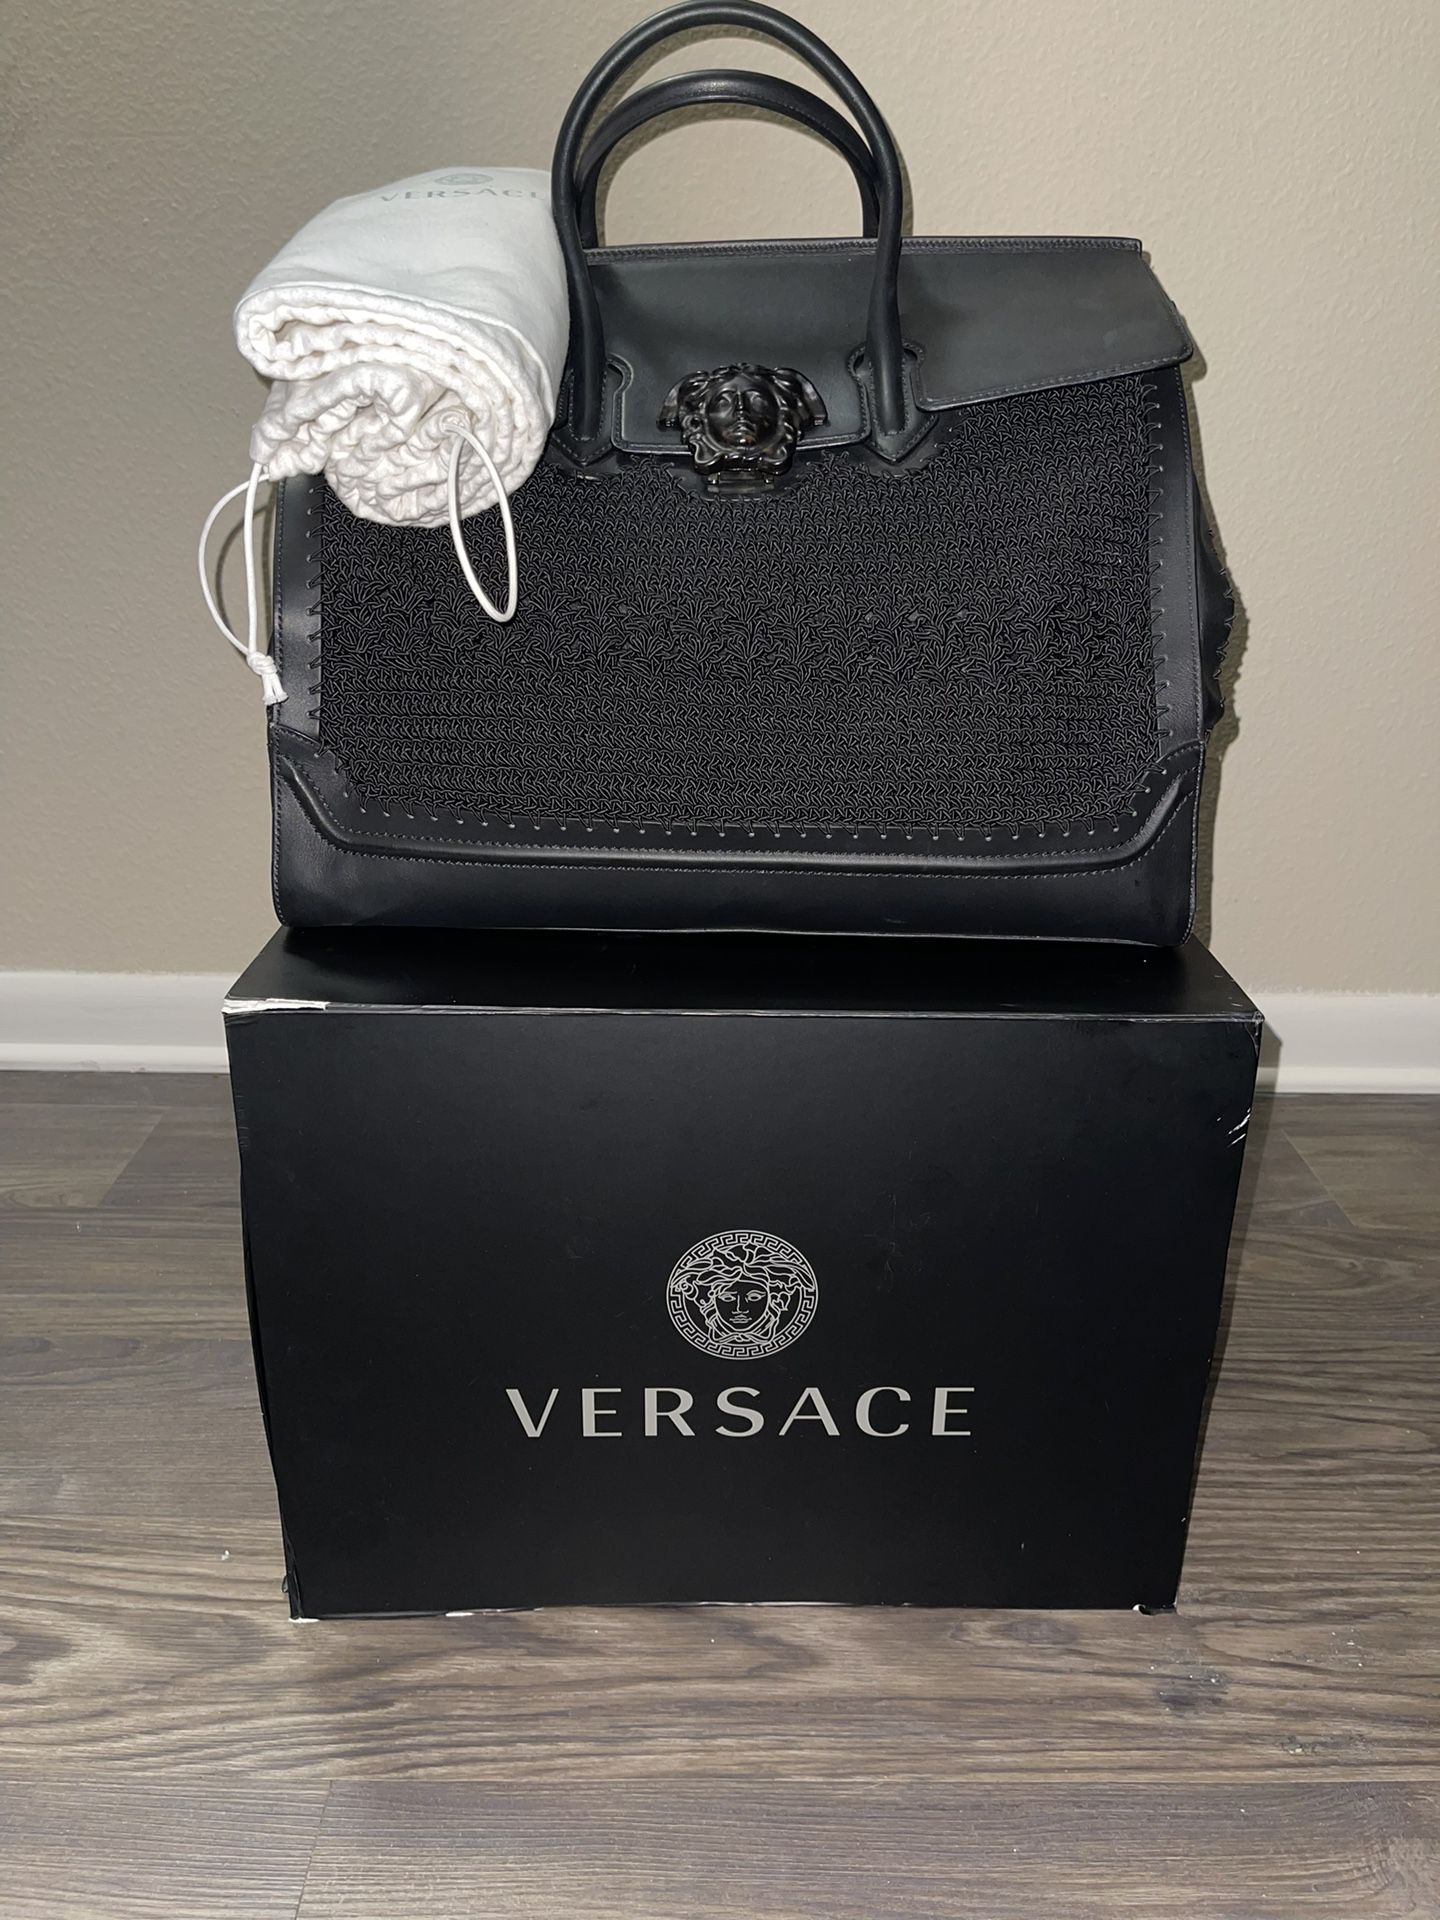 Versace CrochetPalazzo Leather Weekend Travel Bag